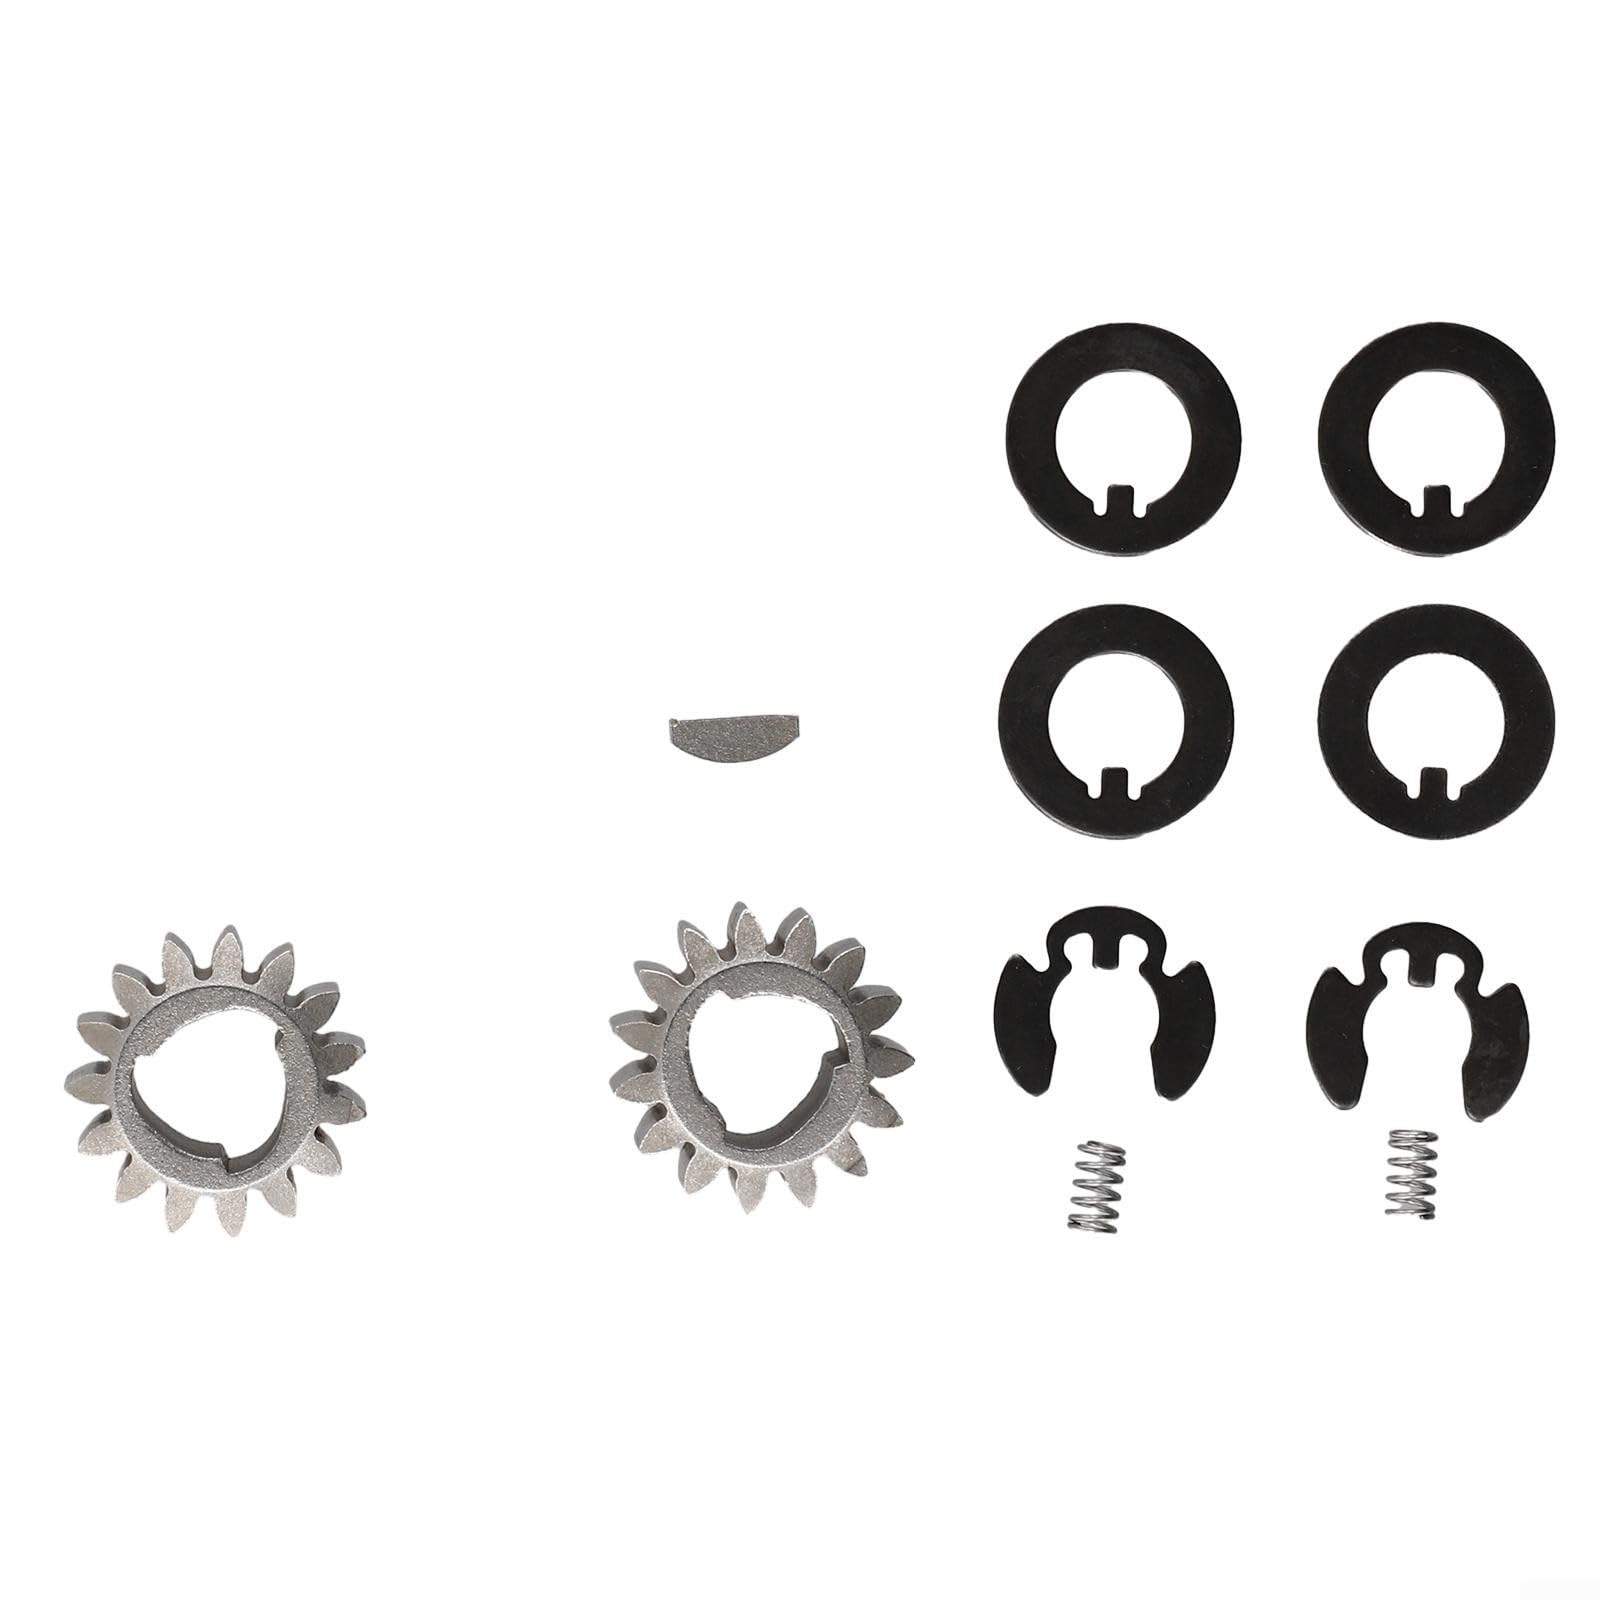 Ersatz für 55,9 cm (22 Zoll) Recycler Rasenmäher-Hinterradgetriebe-Set mit unserem 105-3040 (15 Zähne) Kit: ersetzt 105-6840, 65-27204, 39-9650 und 1,554,647.6 cm von CNANRNANC